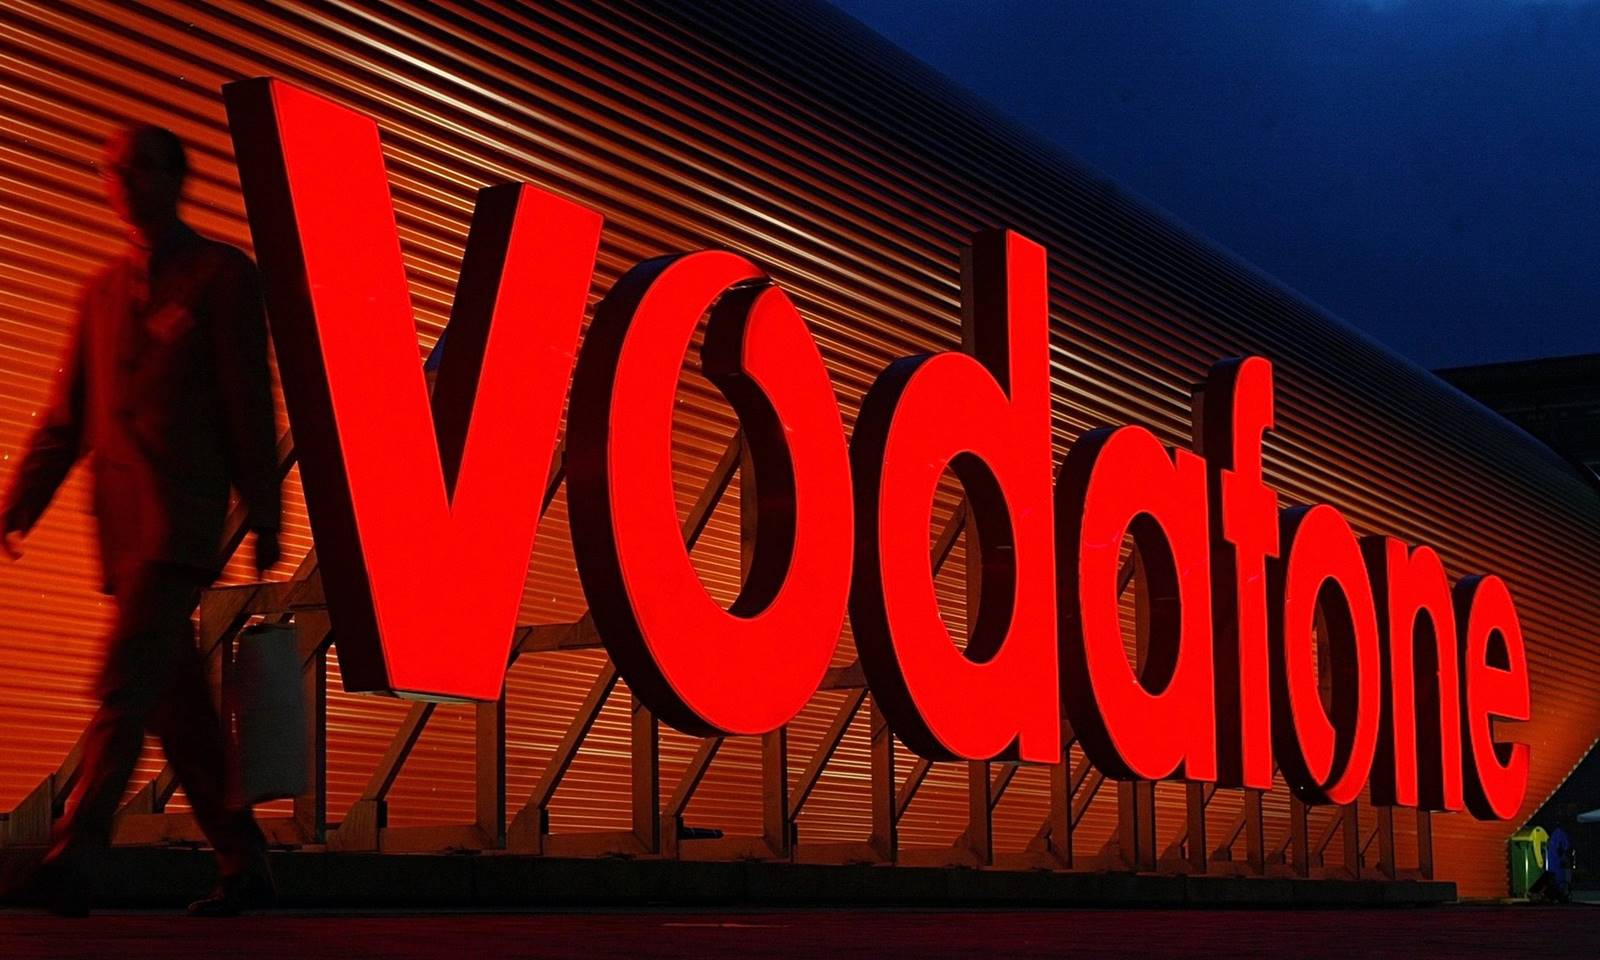 Nuevo smartphone Vodafone grandes descuentos.